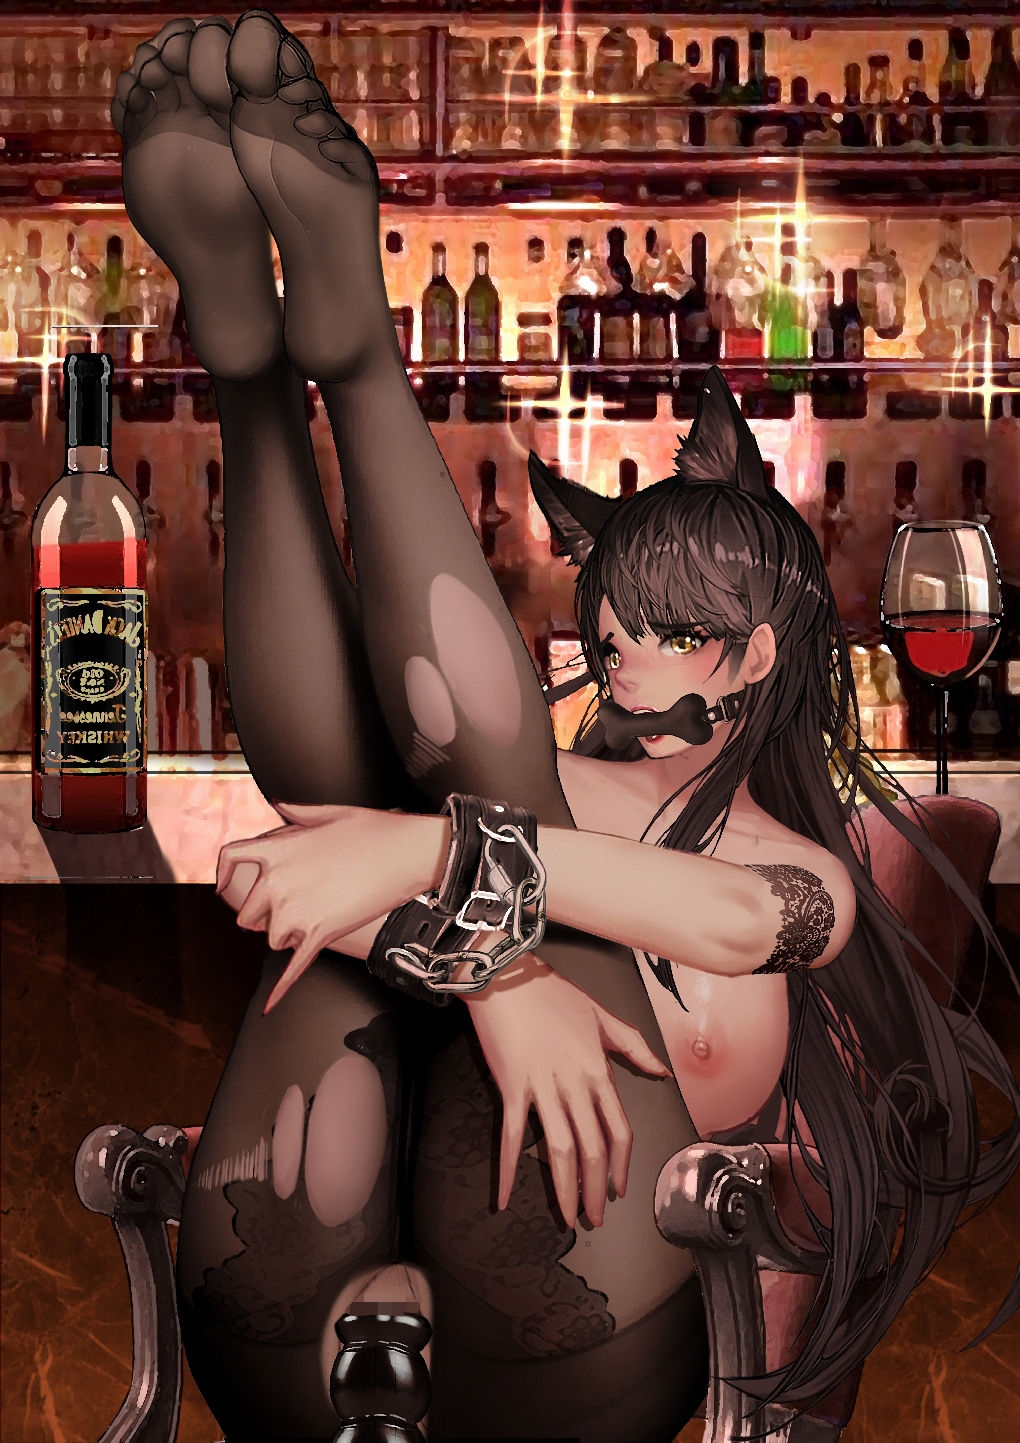 [-kudagu-] atago in the bar (Azur Lane) 20